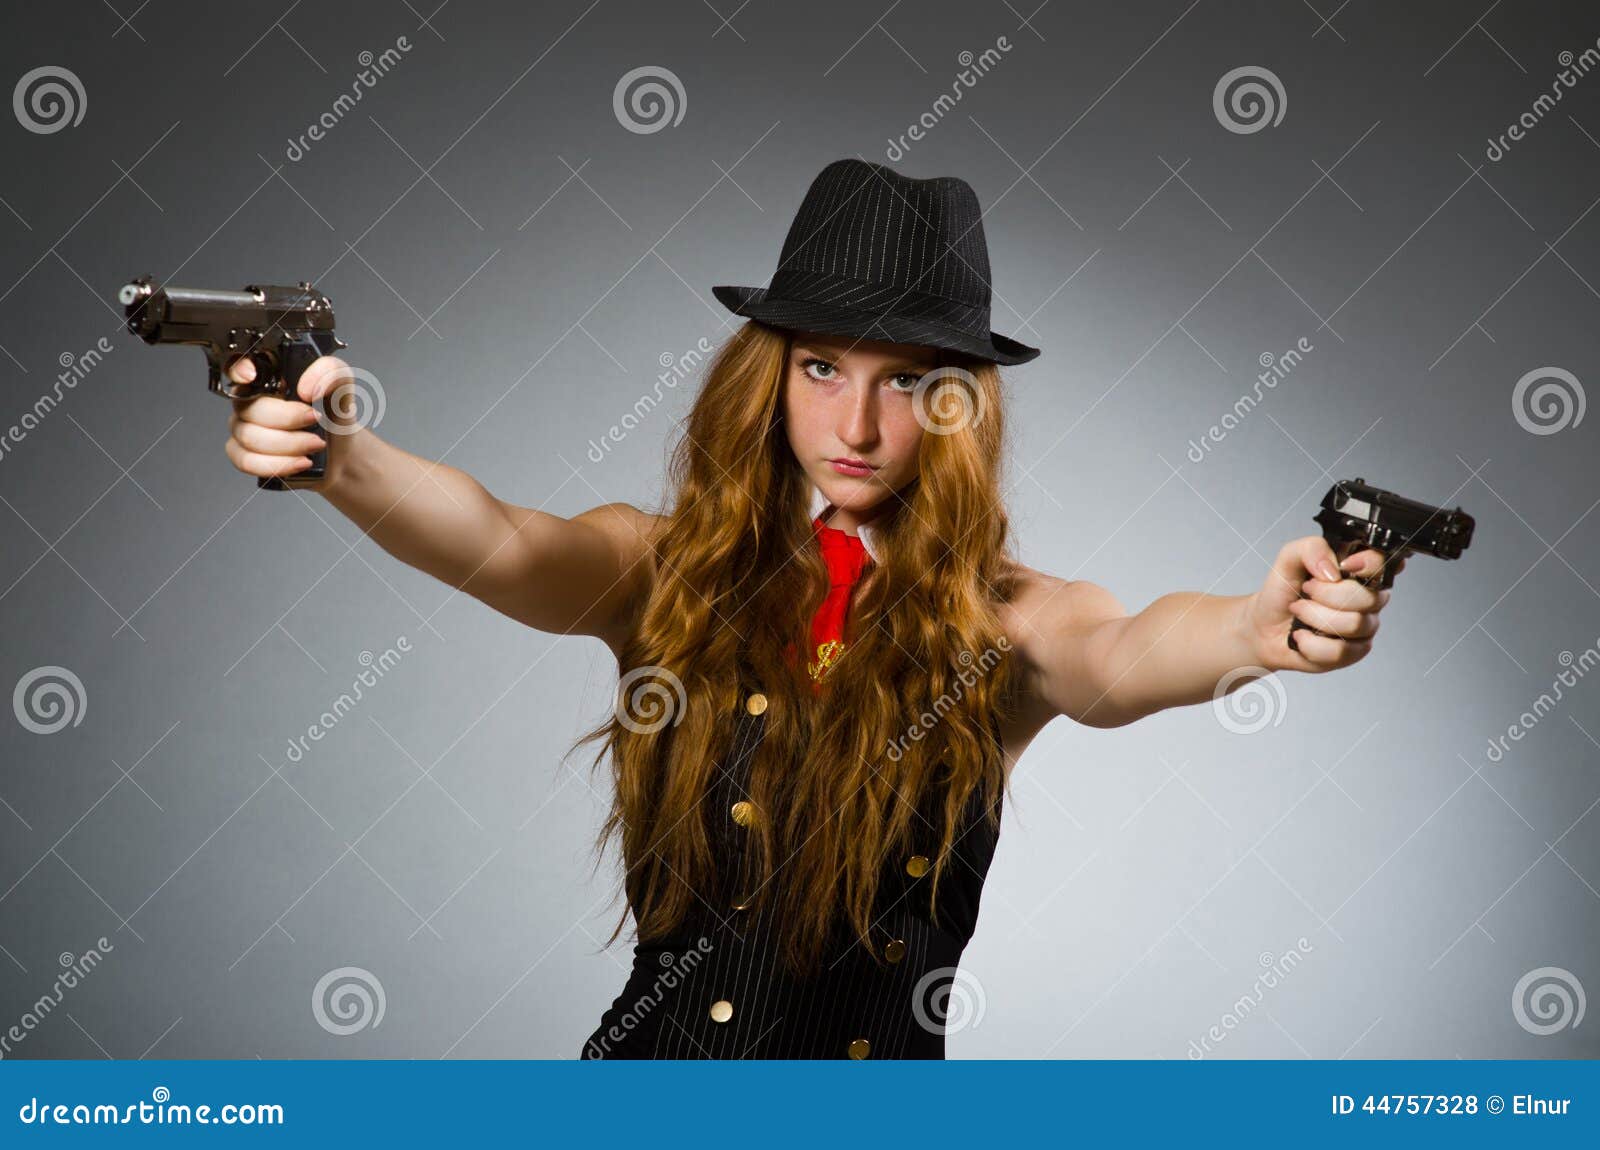 Включи девочки бандитки. Девушка гангстер с пистолетом. Женщина бандит. Девушка бандитка. Бандитки с оружием.